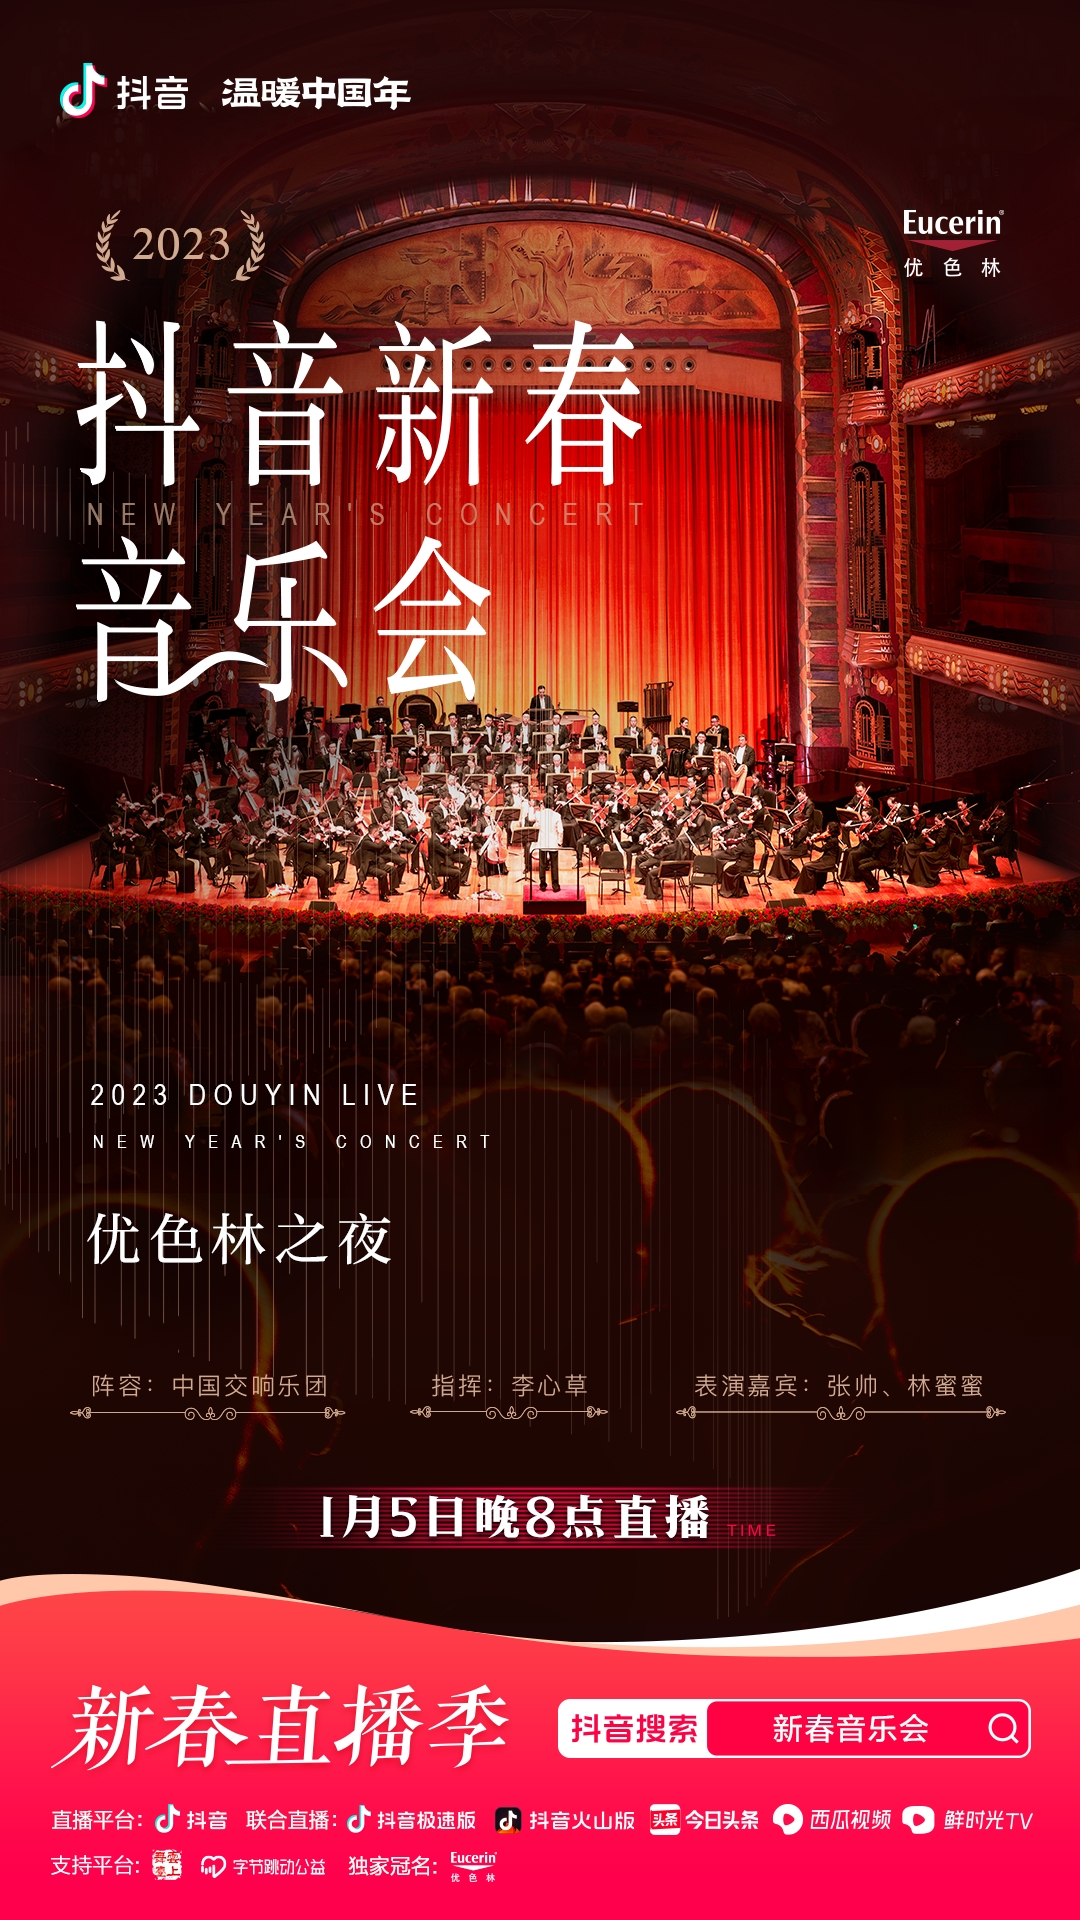 抖音新春多利平台
会即将华丽开场，中国交响乐团奏响新春序曲！